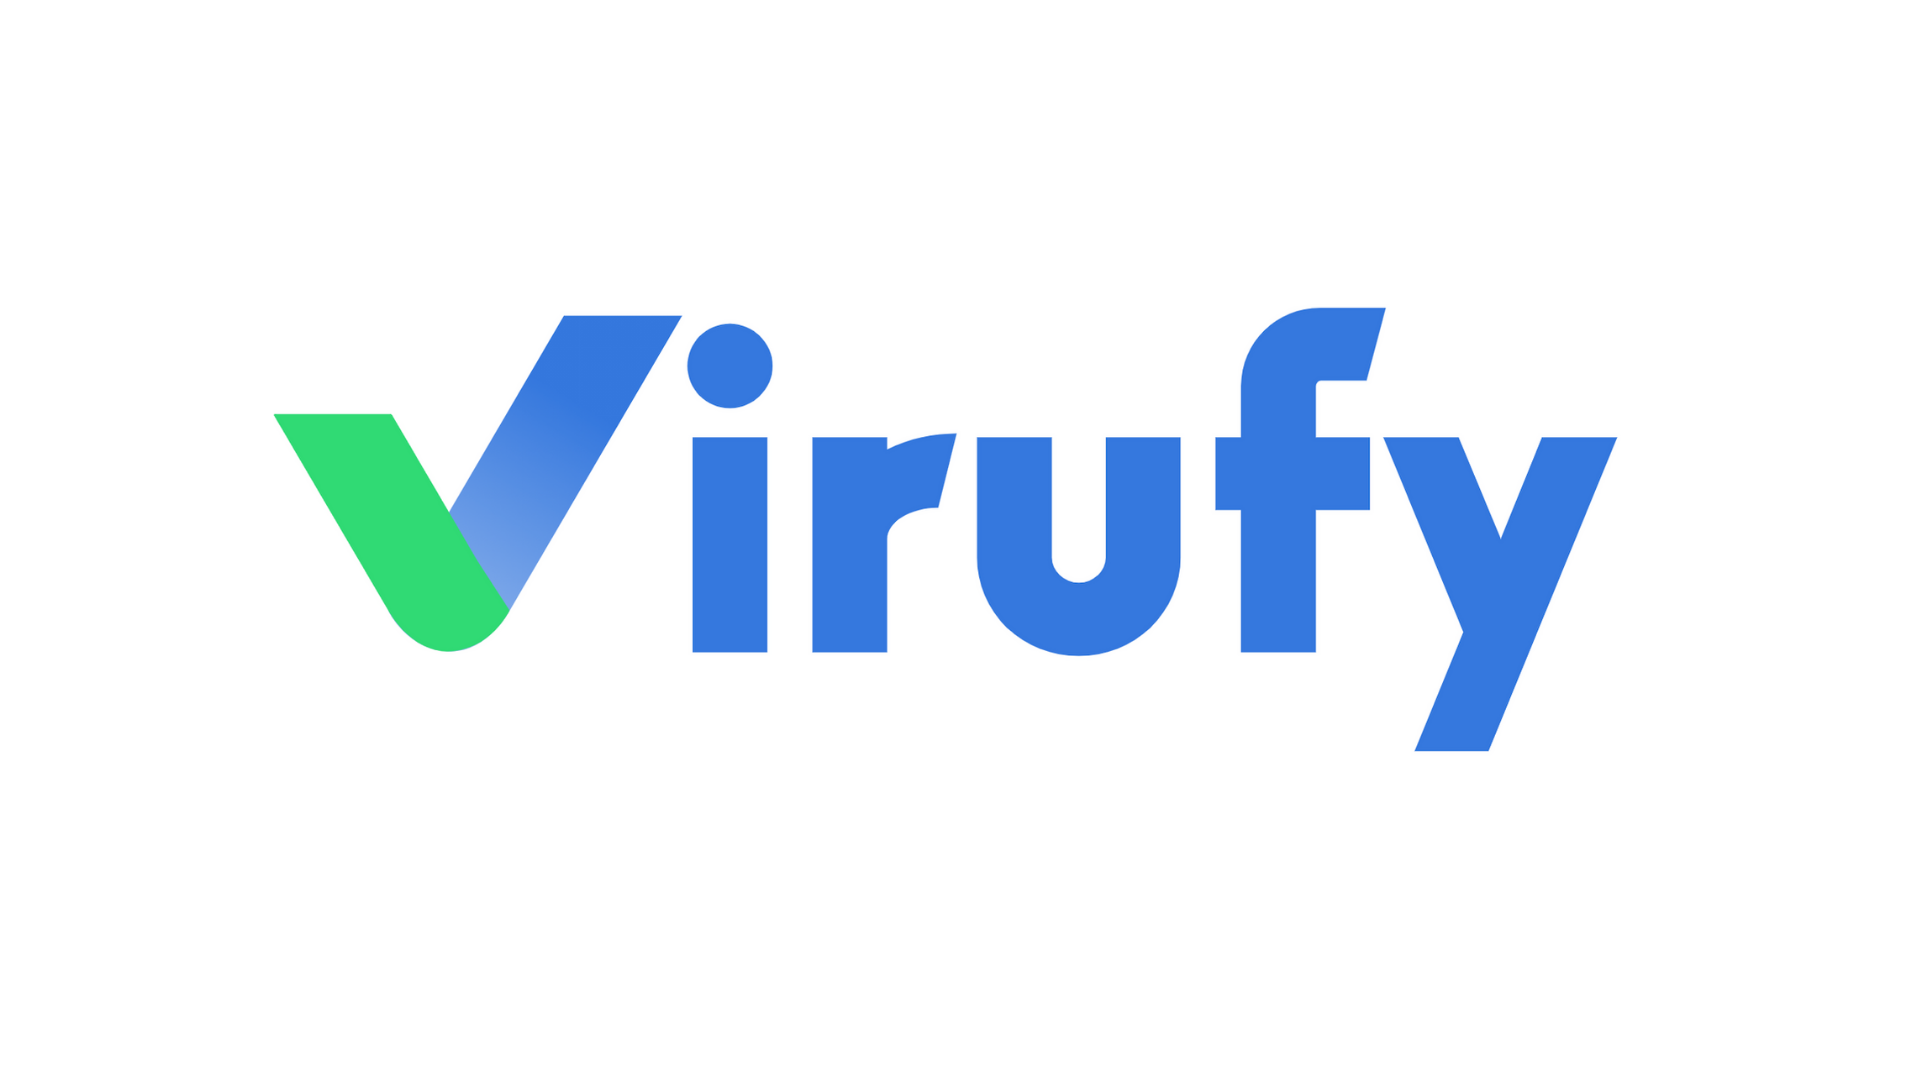 Virufy